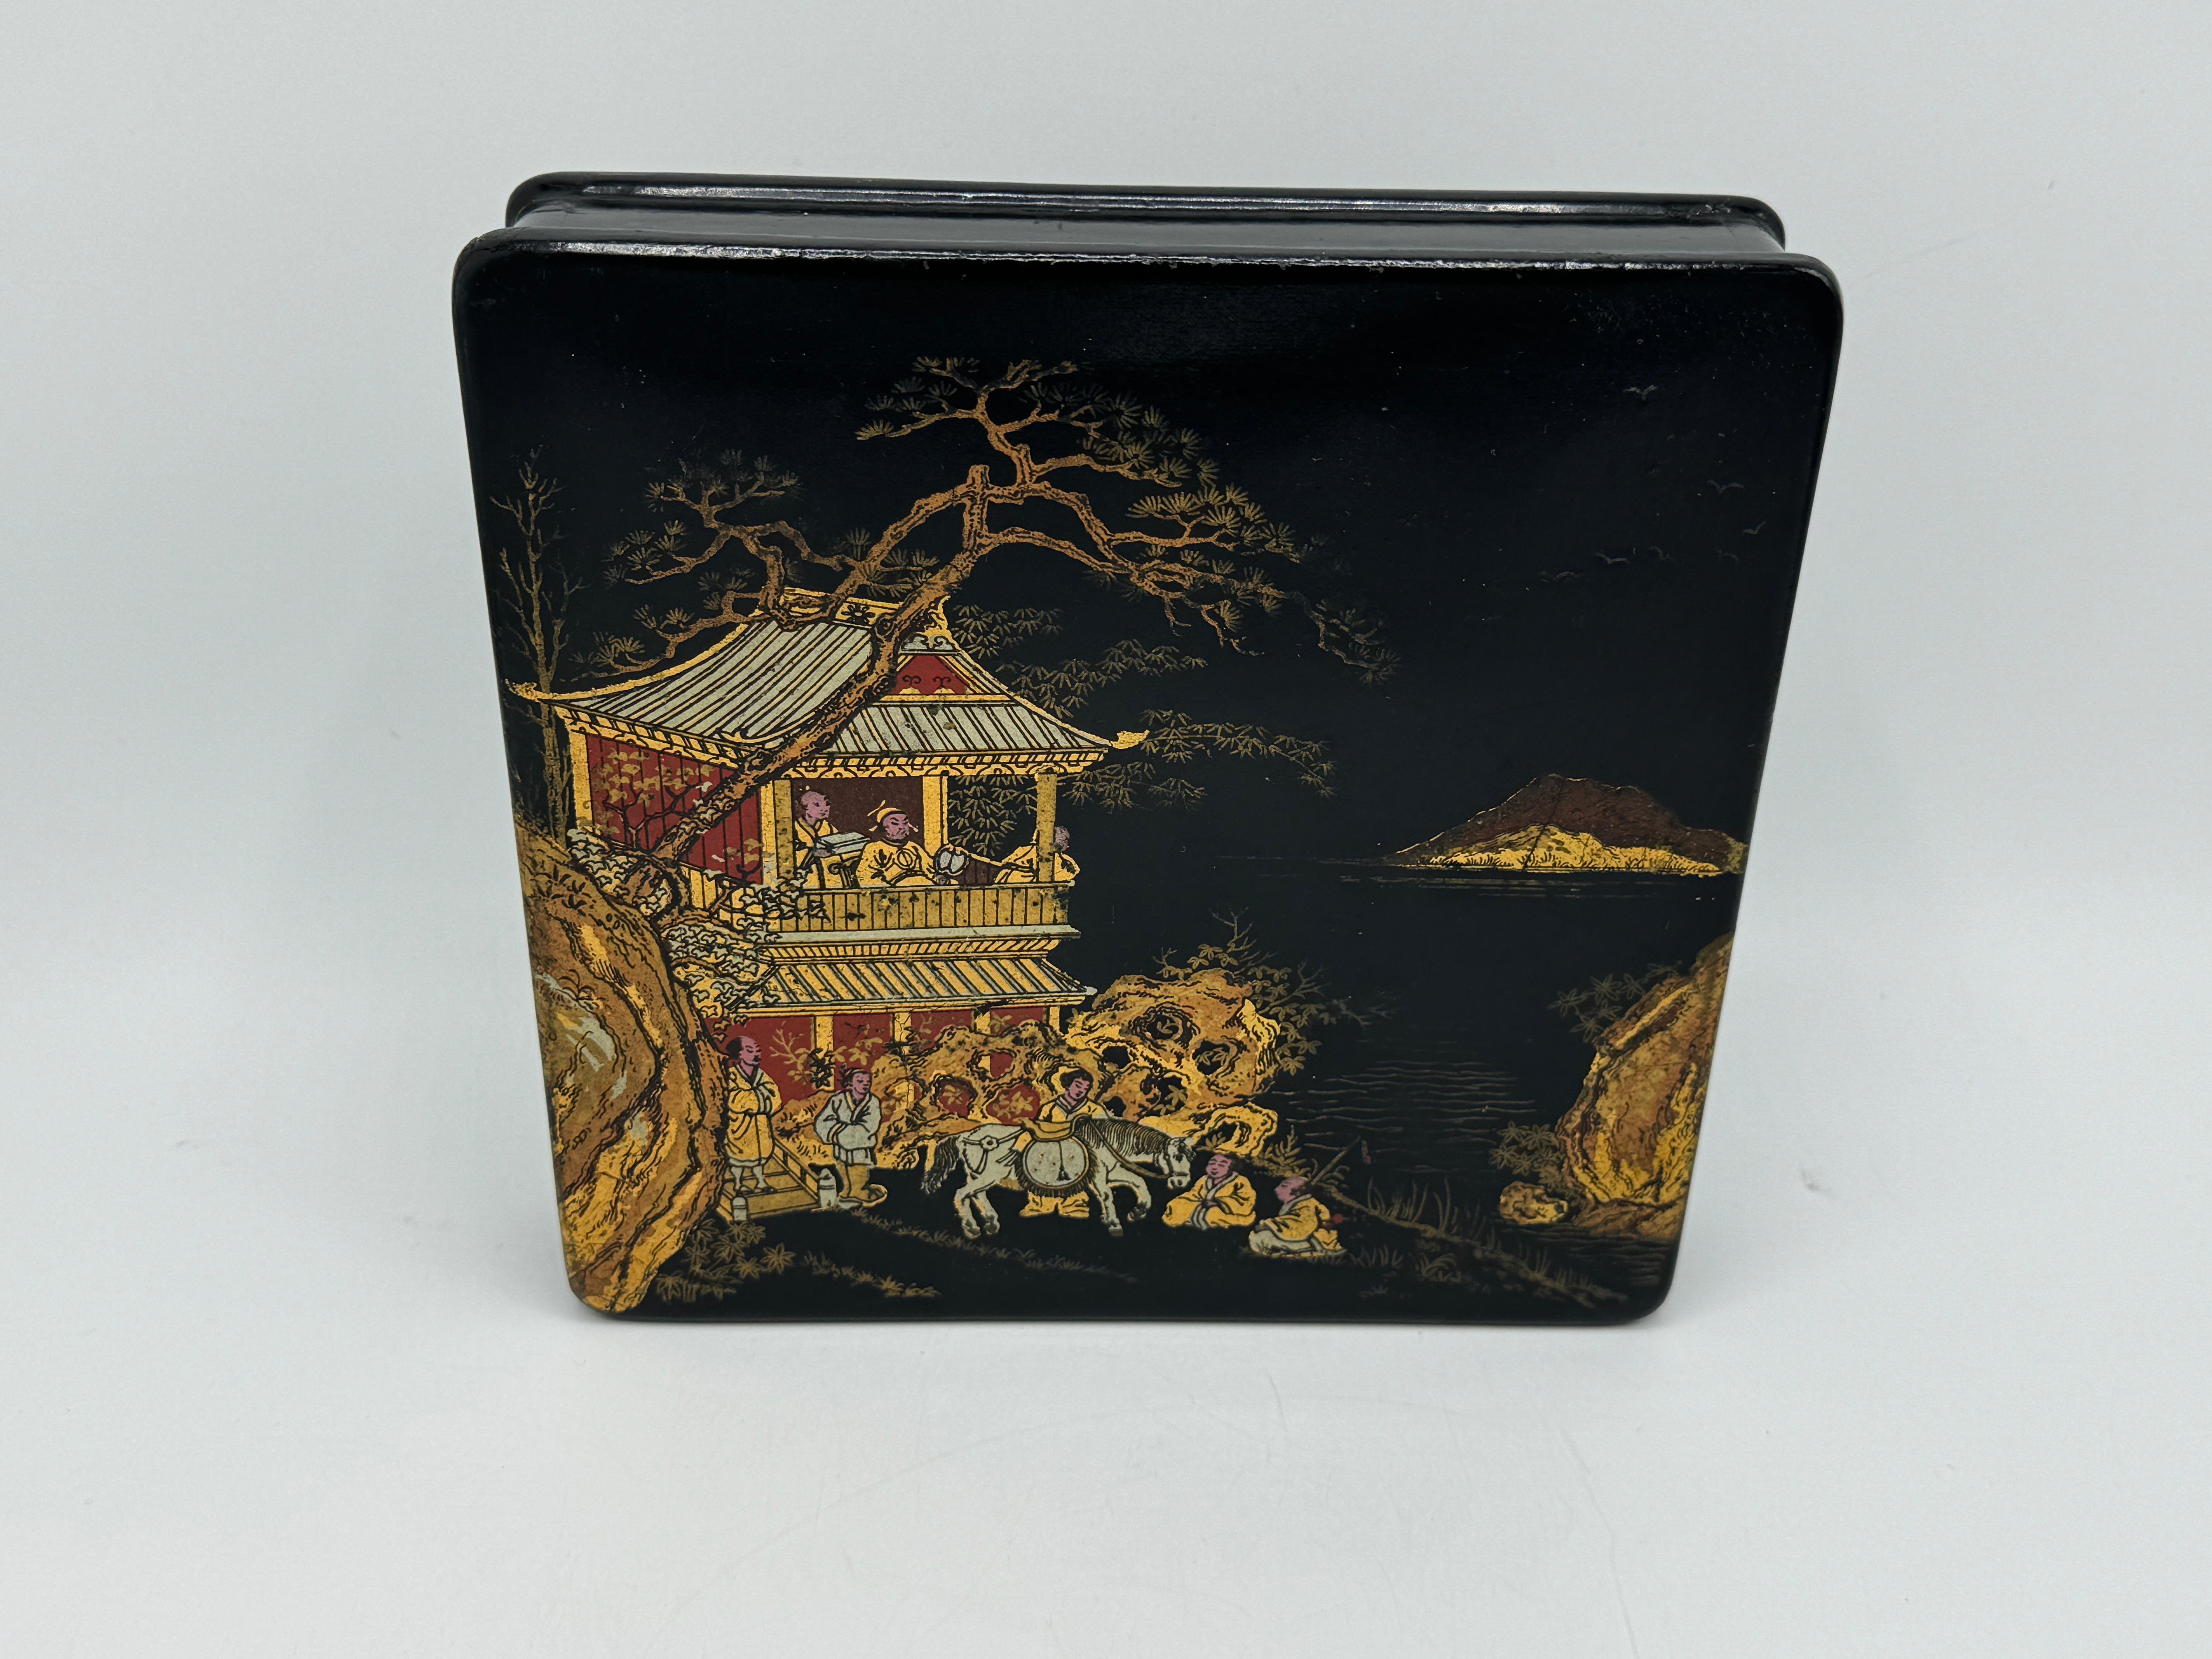 Angeboten wird ein exzellentes Beispiel für französisches Pappmaché aus dem 19. Jahrhundert in Form einer quadratischen Schachtel, verziert mit goldenen und roten Chinoiserie-Szenen auf schwarzem Lack. Die Chinoiserie ist zwar orientalisch geprägt,